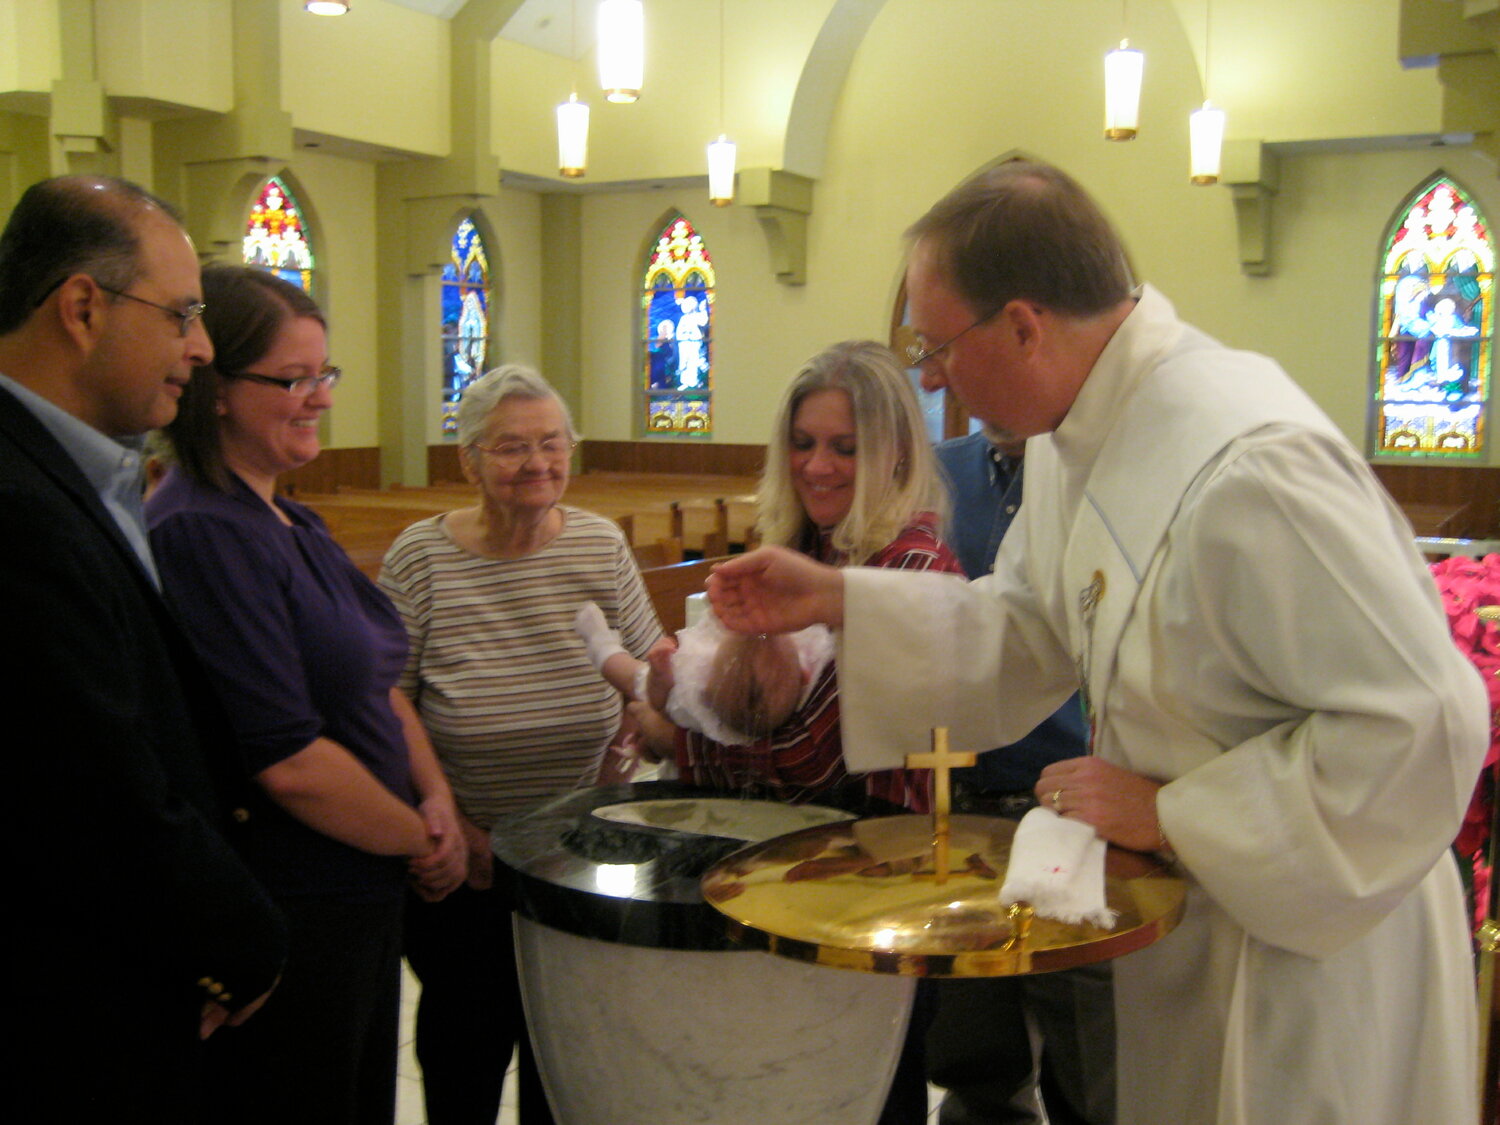 A deacon baptizes a baby.